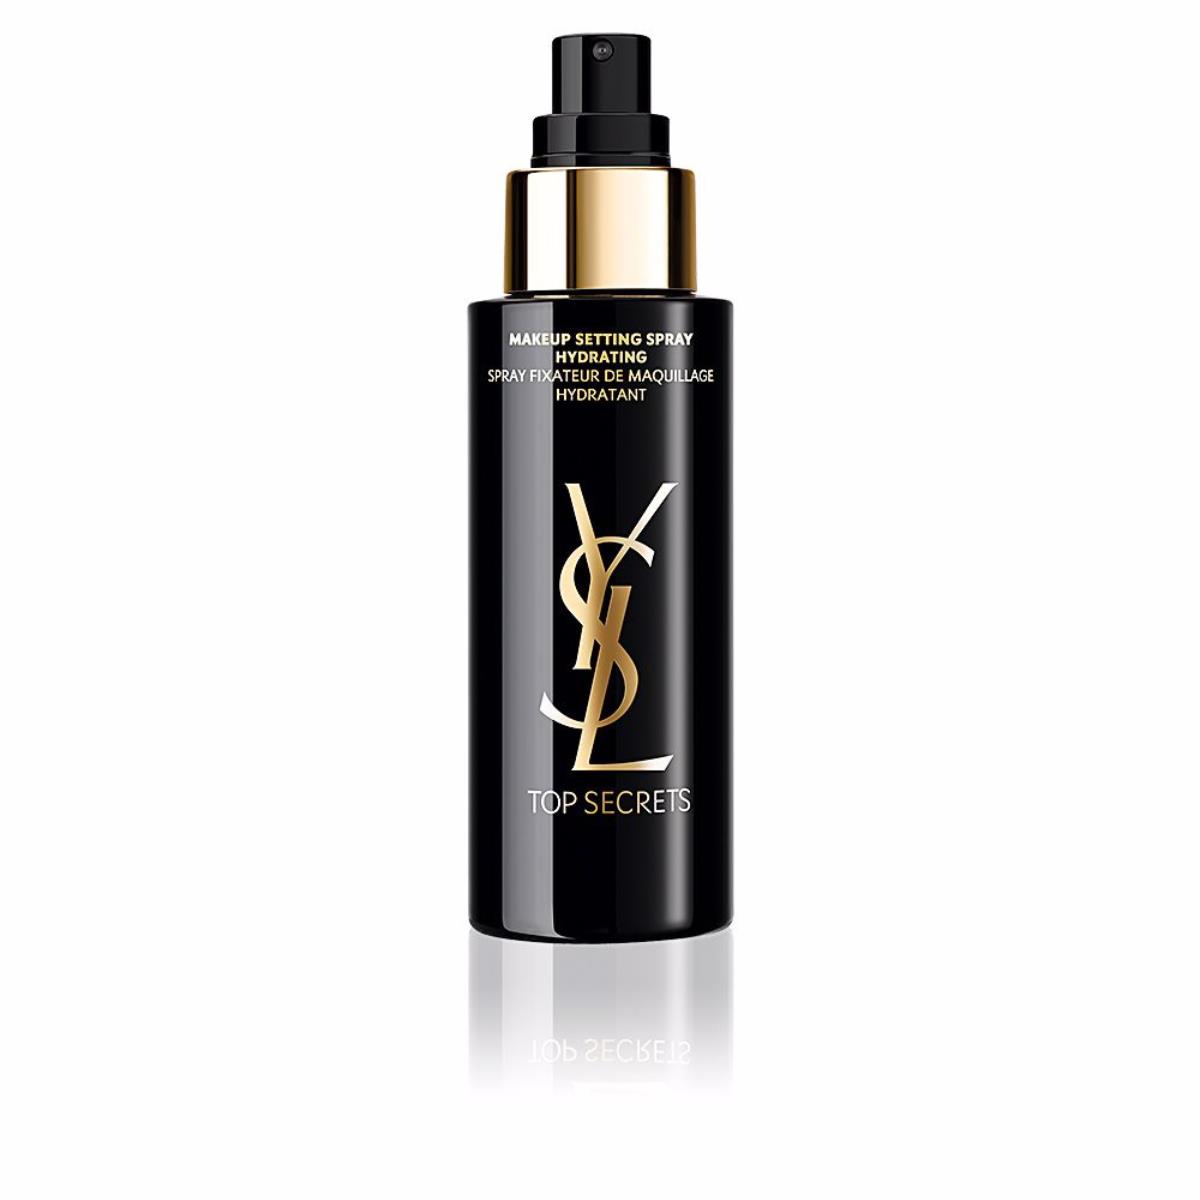 Fijador de maquillaje Top Secrets Spray de Yves Saint Laurent